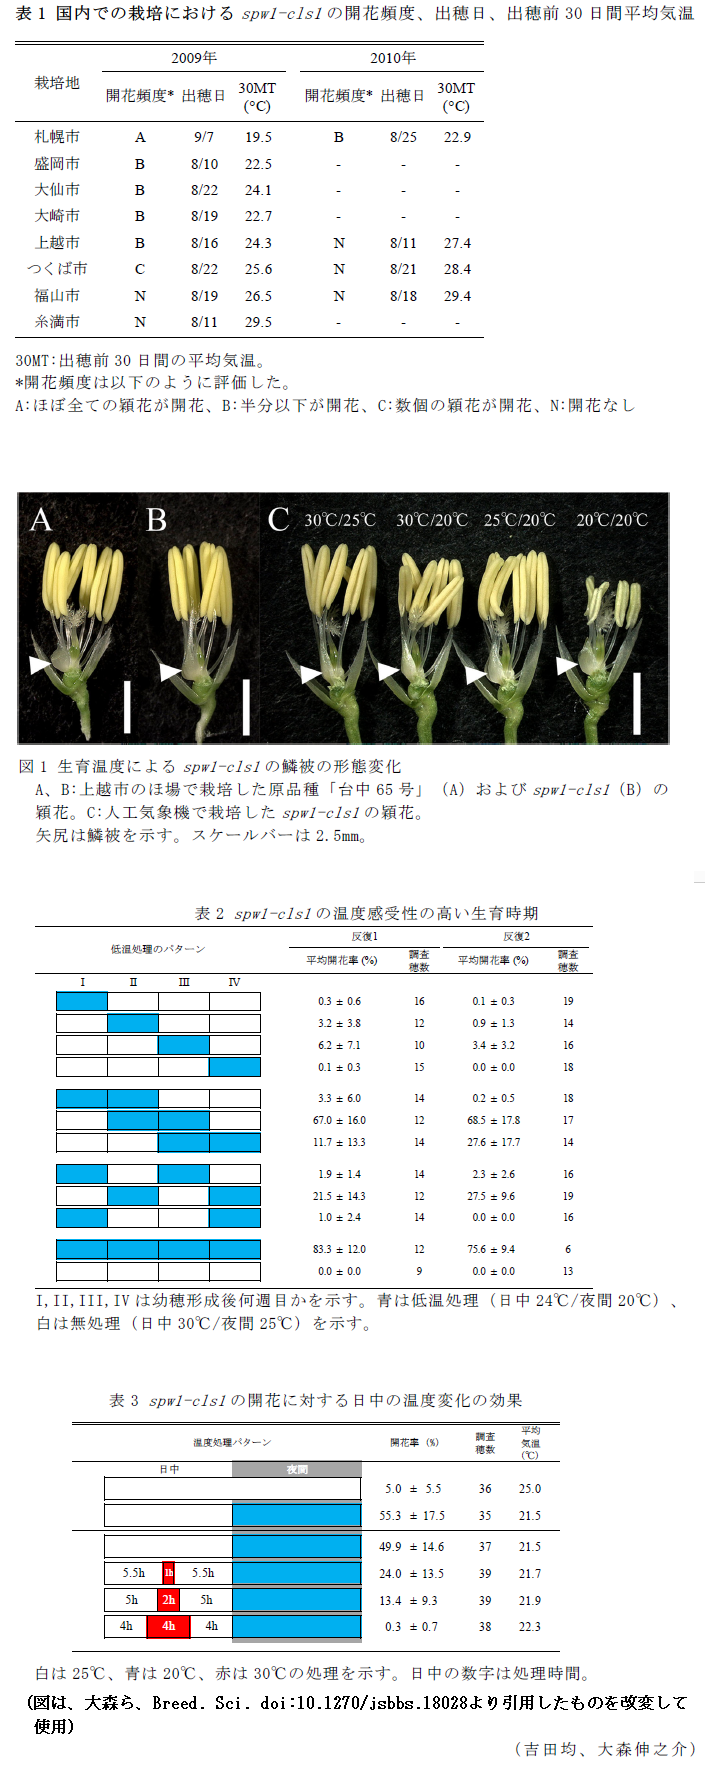 表1 国内での栽培におけるspw1-cls1の開花頻度、出穂日、出穂前30日間平均気温,図1 生育温度によるspw1-cls1の鱗被の形態変化,表2 spw1-cls1の温度感受性の高い生育時期,表3 spw1-cls1の開花に対する日中の温度変化の効果